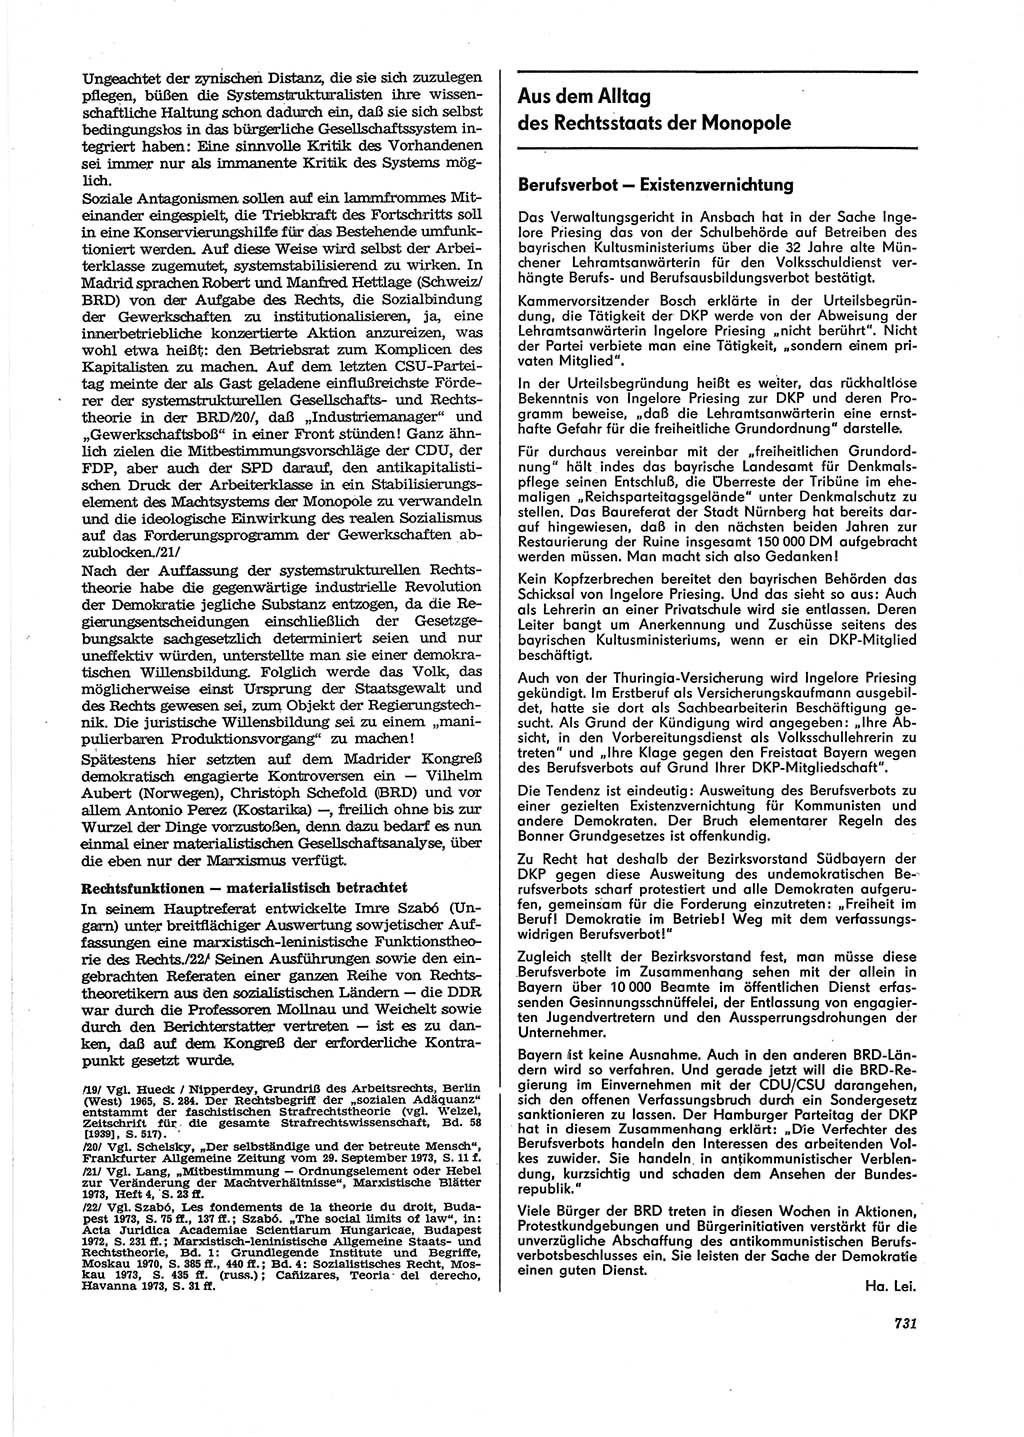 Neue Justiz (NJ), Zeitschrift für Recht und Rechtswissenschaft [Deutsche Demokratische Republik (DDR)], 27. Jahrgang 1973, Seite 731 (NJ DDR 1973, S. 731)